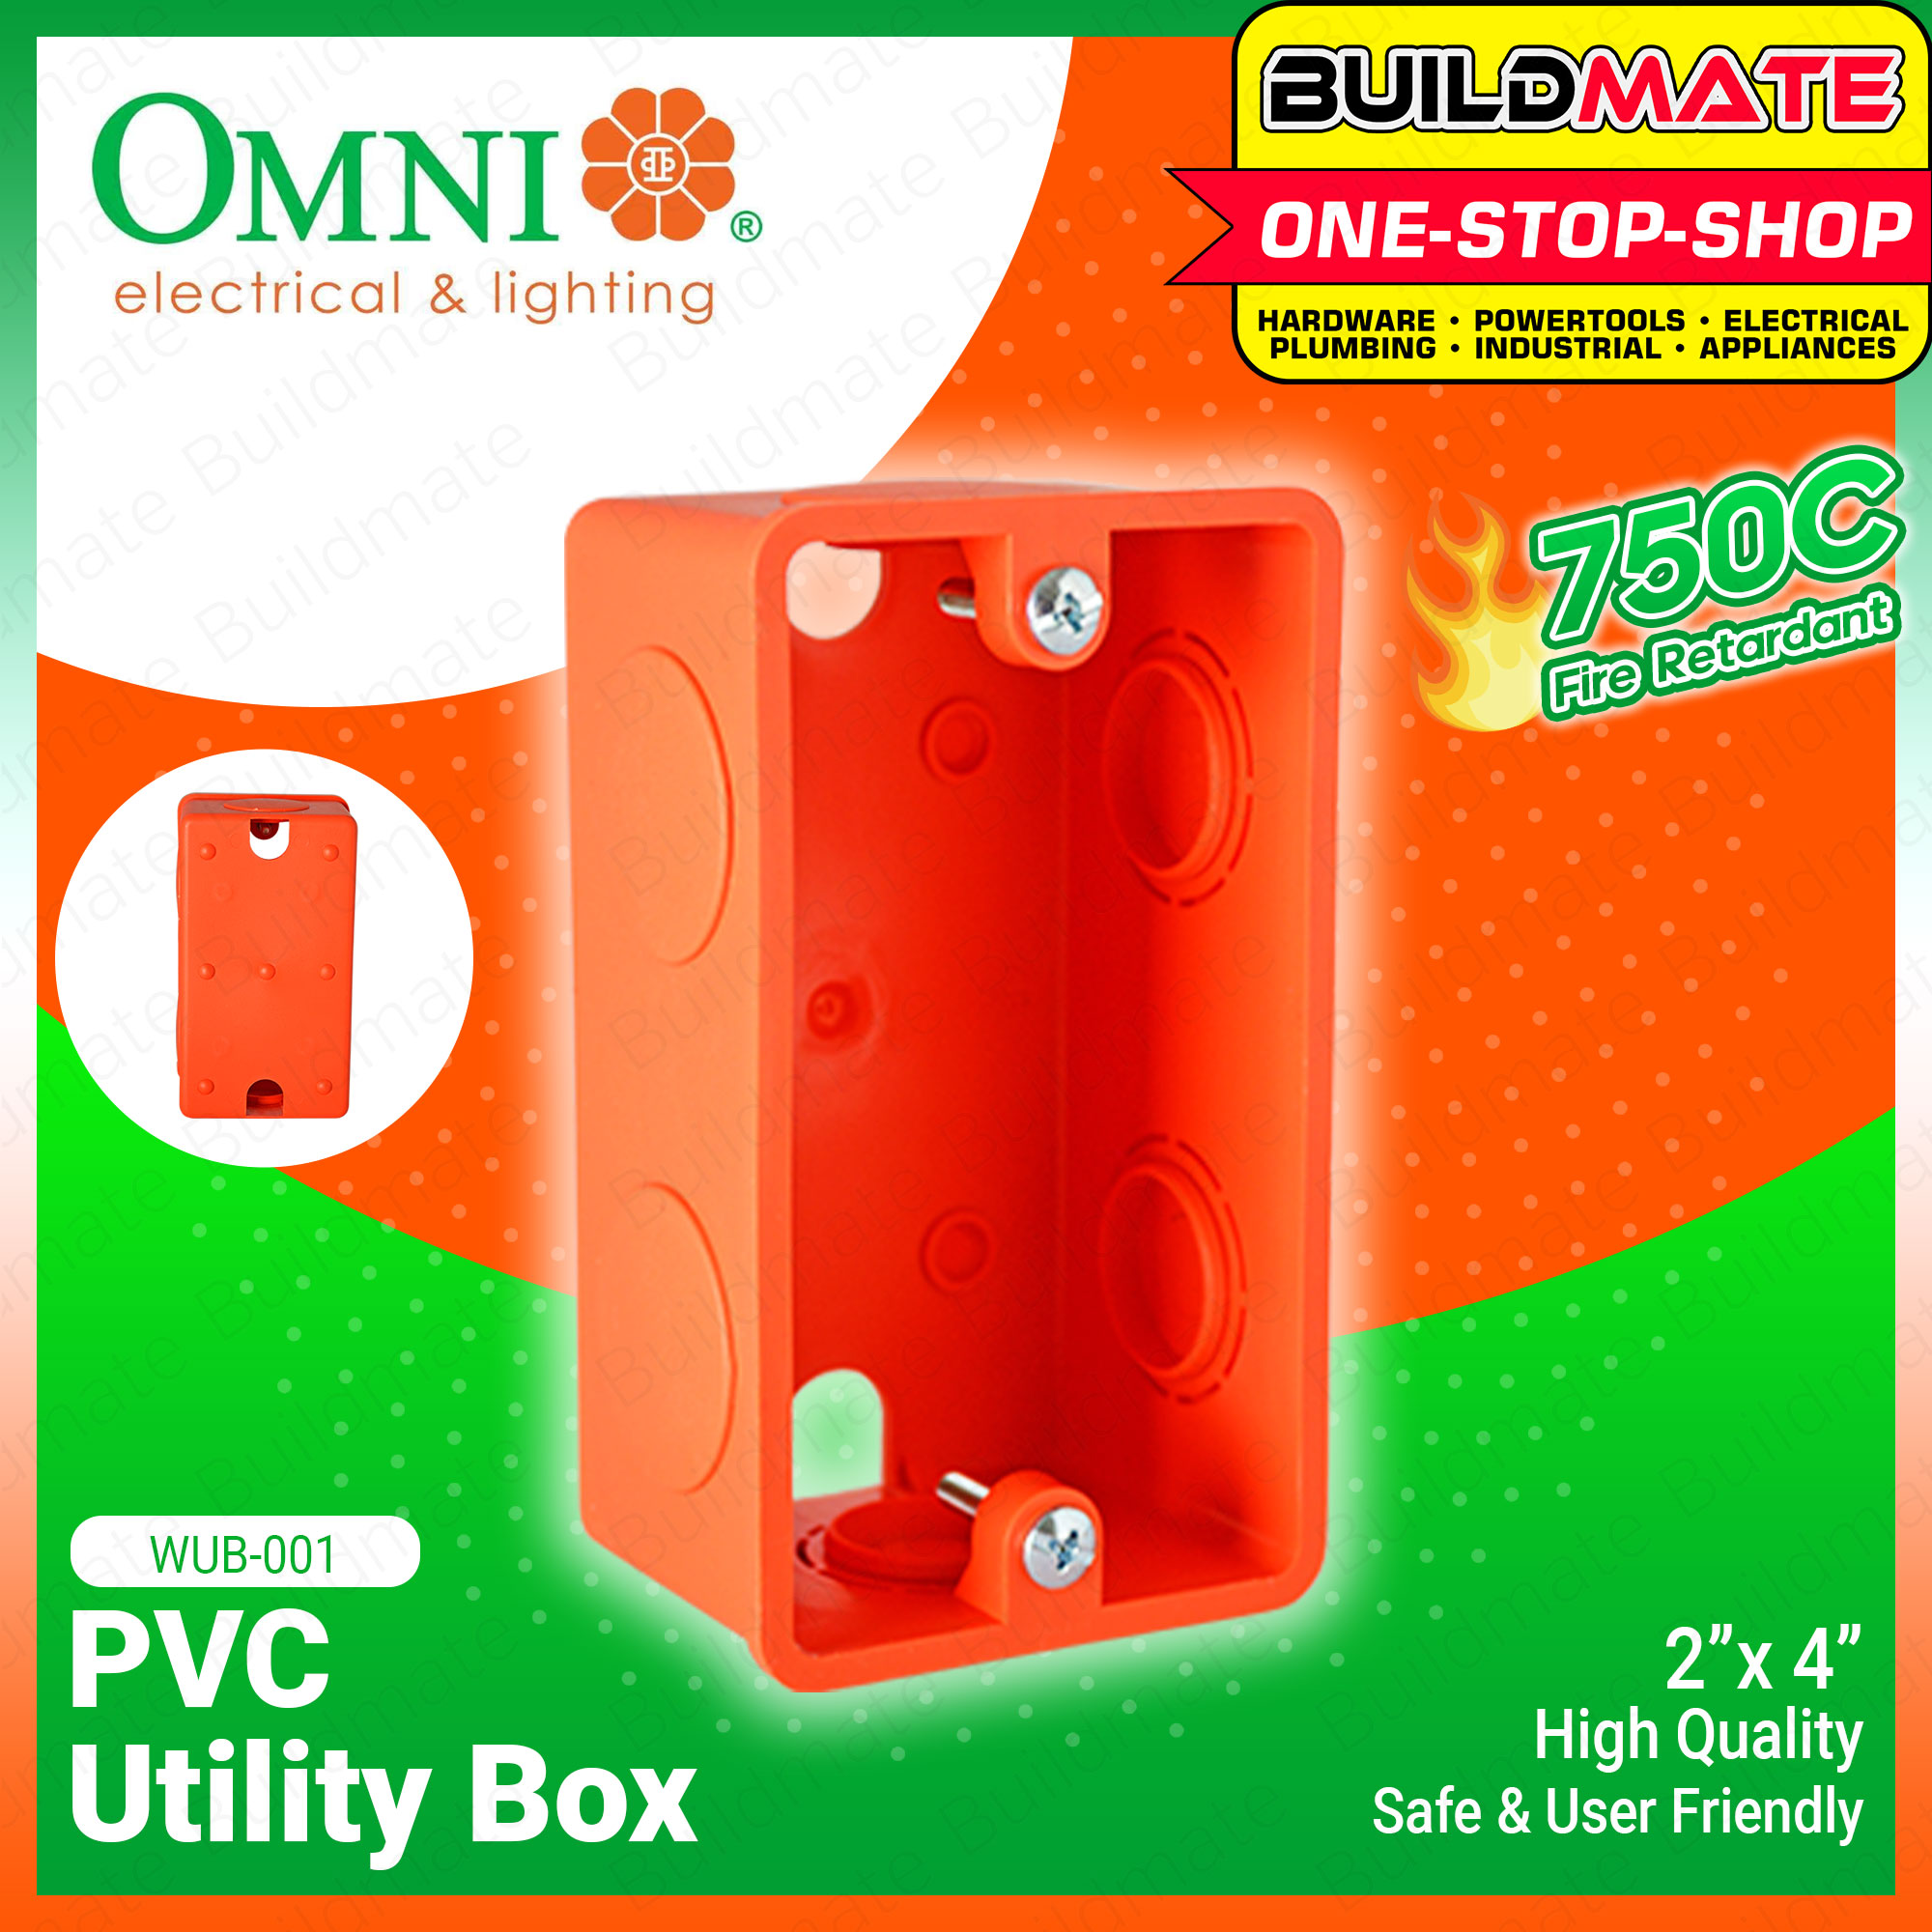 PVC Utility Box - WUB-001